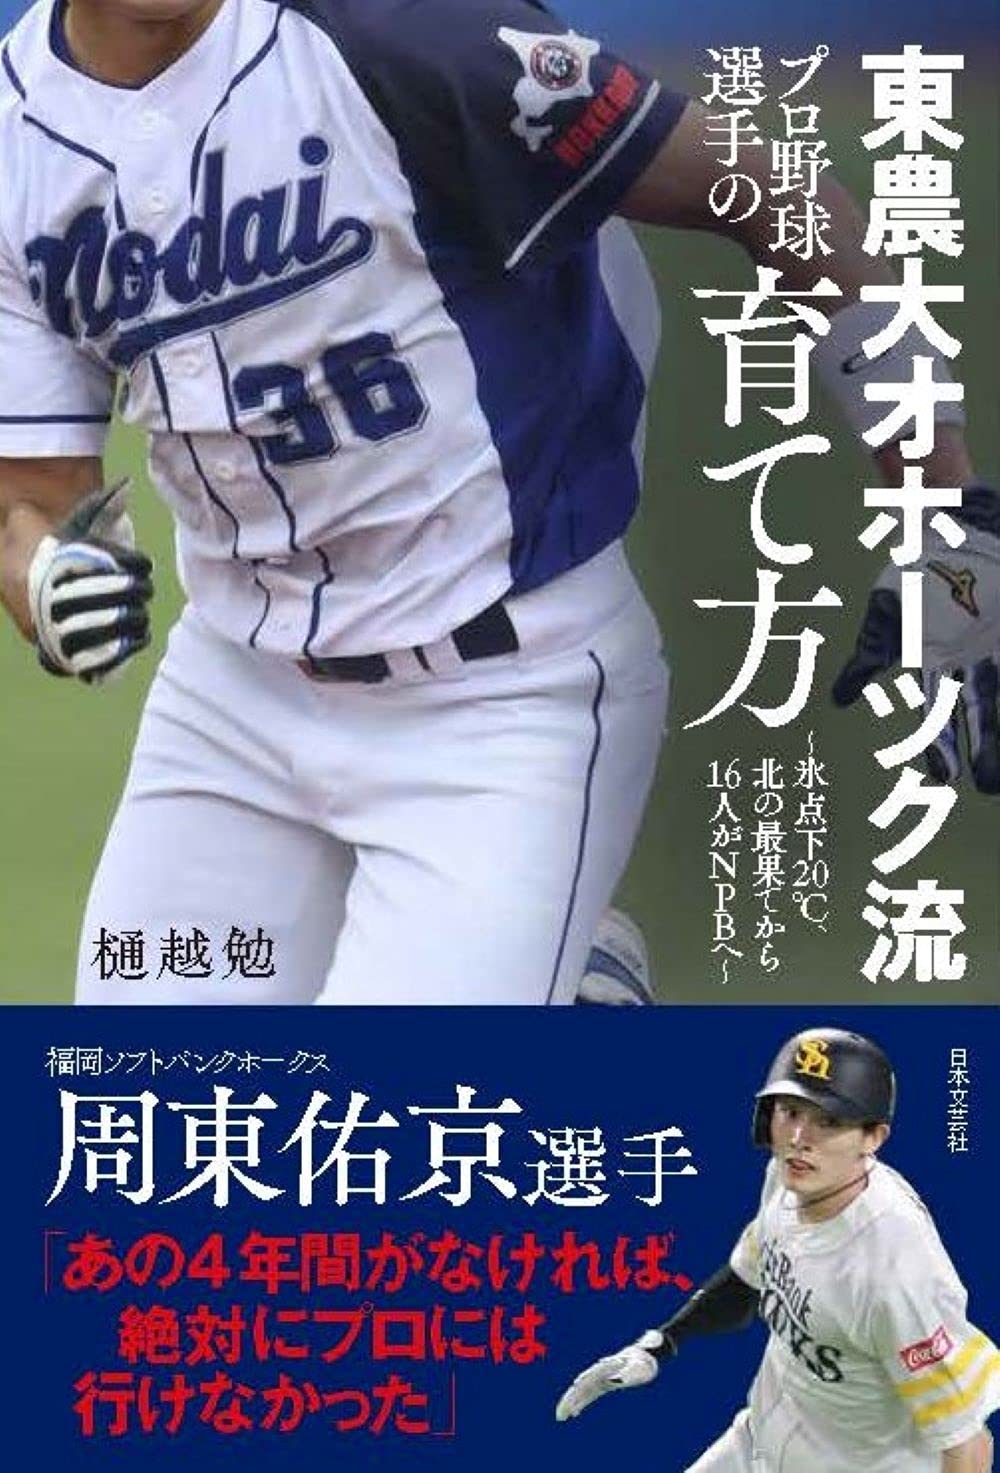 東京農業大学 野球 ユニフォーム 上下セット | kensysgas.com